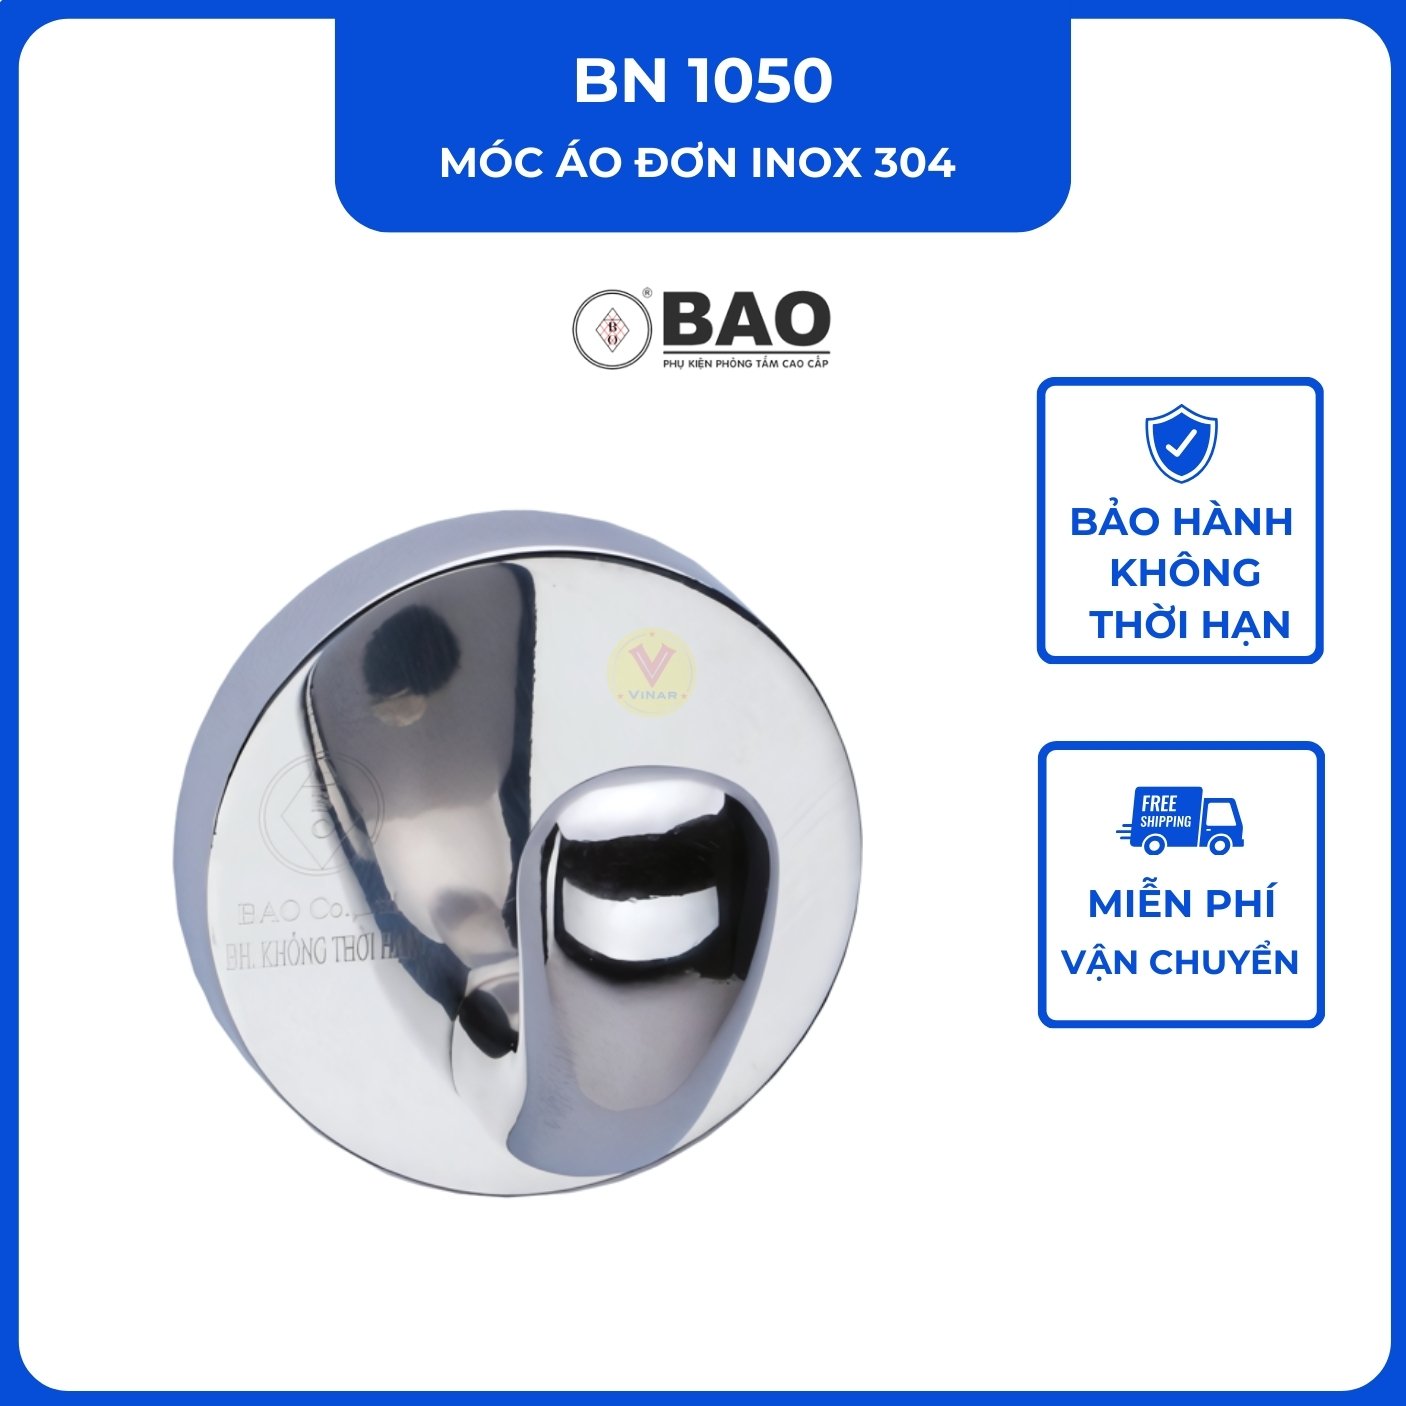 moc-ao-don-inox-304-BN1050